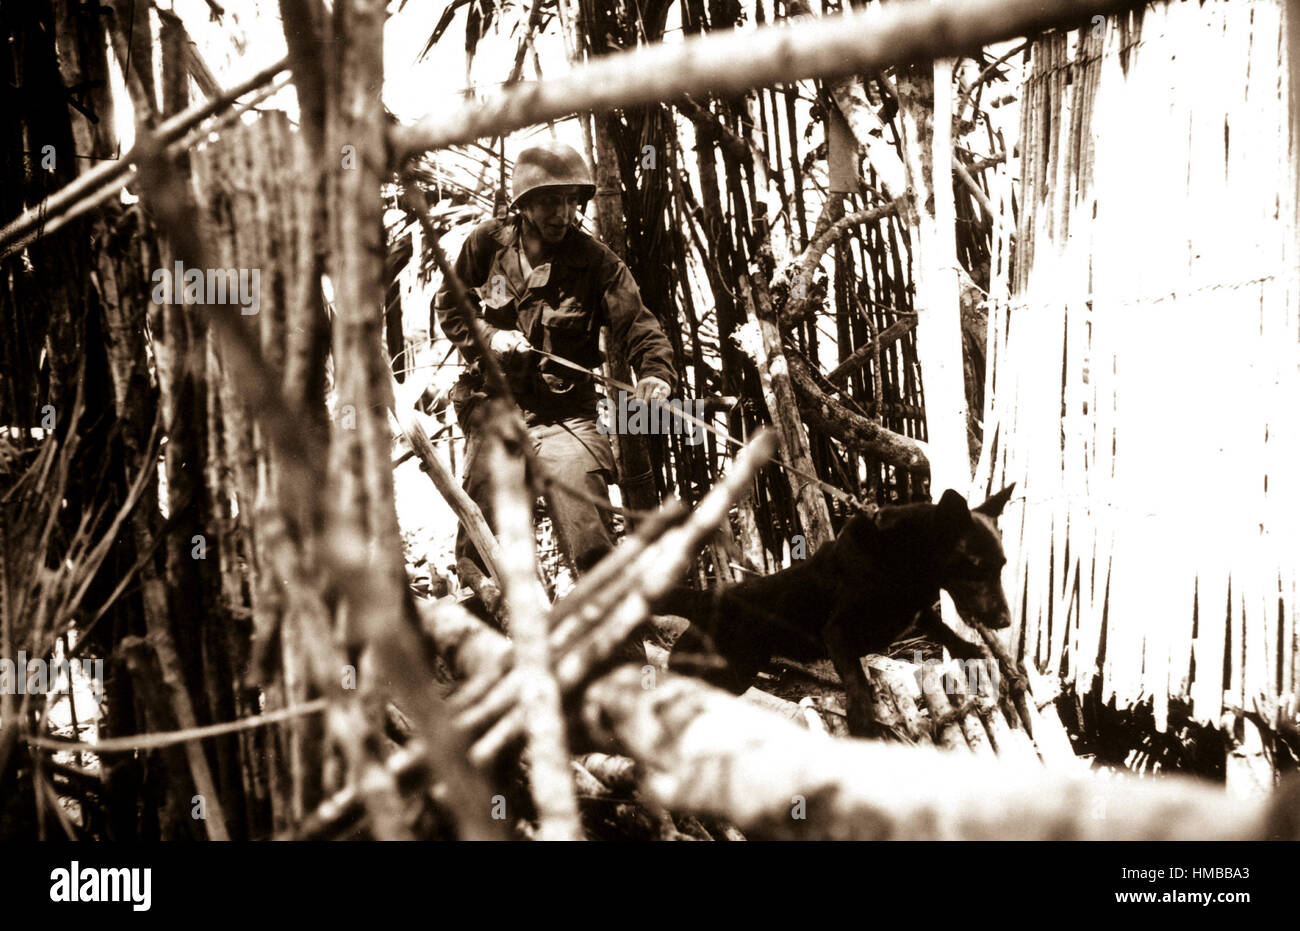 Eckzähne des Zuges QM Krieg Hund auf Biak Insel vor der Küste Neuguineas dienten Japanisch versteckt in Höhlen und Dschungel Echtheiten aufzuspüren.  Einer dieser Hunde ist hier, bei den Befehl zum Angriff, gesehen Anstrengung an der Leine.  18. Juli 1944.  (Armee) NARA-DATEI #: 111-SC-191760 KRIEG & KONFLIKT BUCH #: 869 Stockfoto